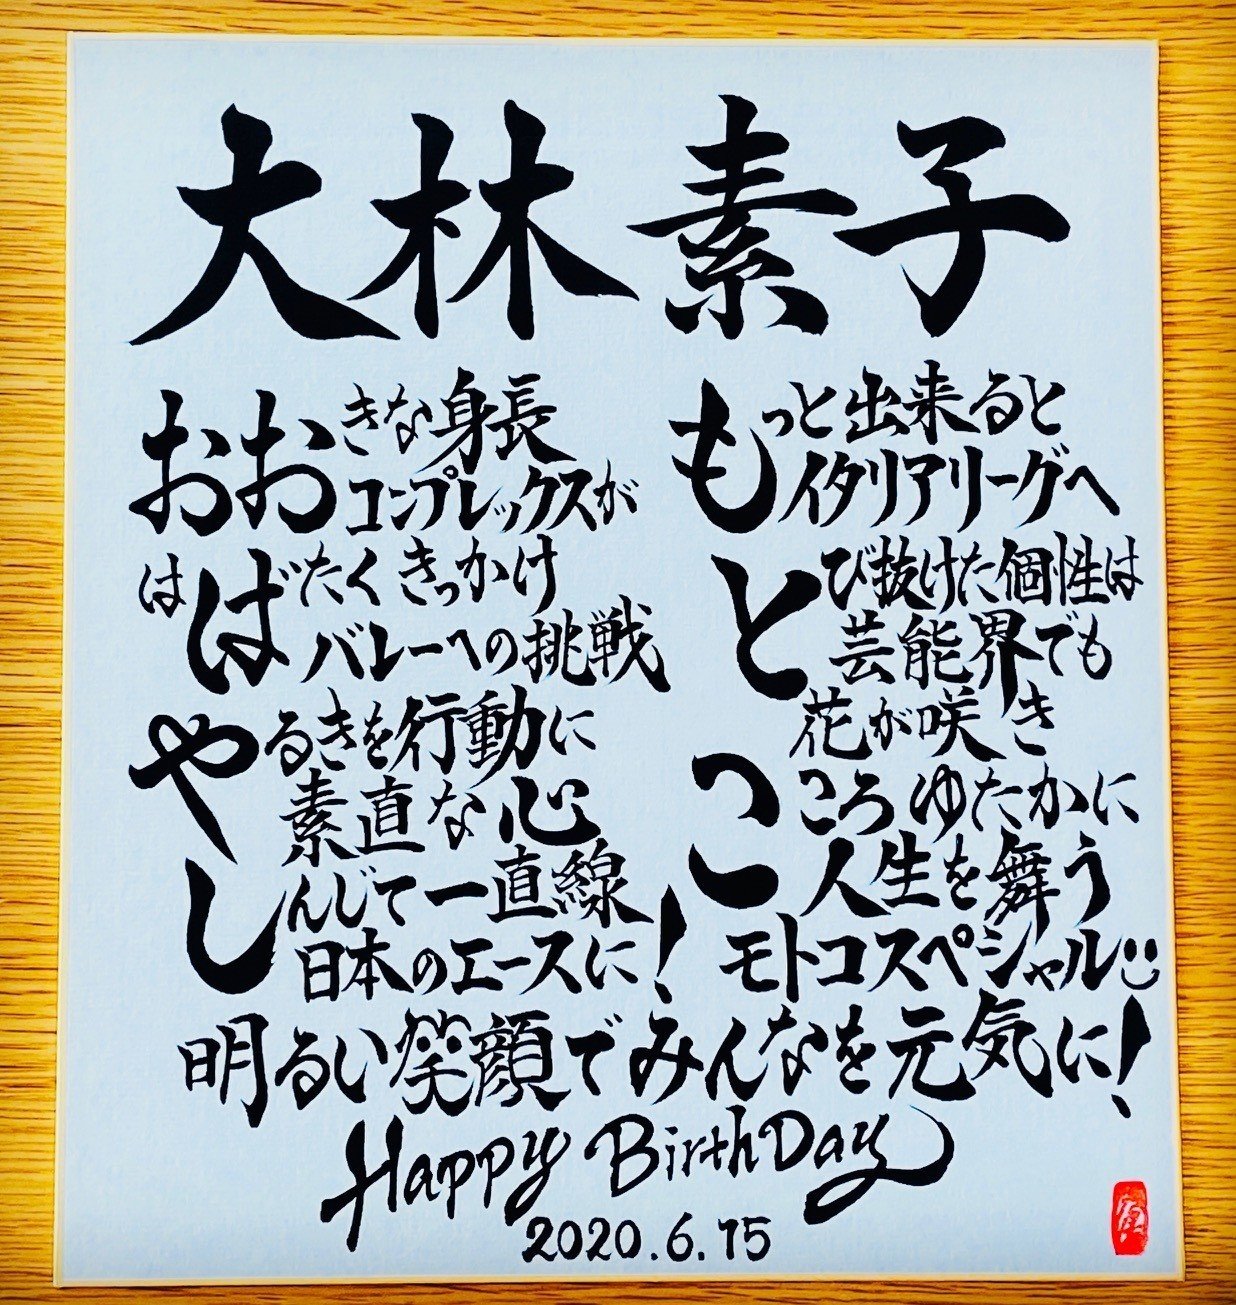 Hbdお名前ポエム 6 15 大林素子さん お誕生日おめでとうございます 書き心 白鳥正人 Note